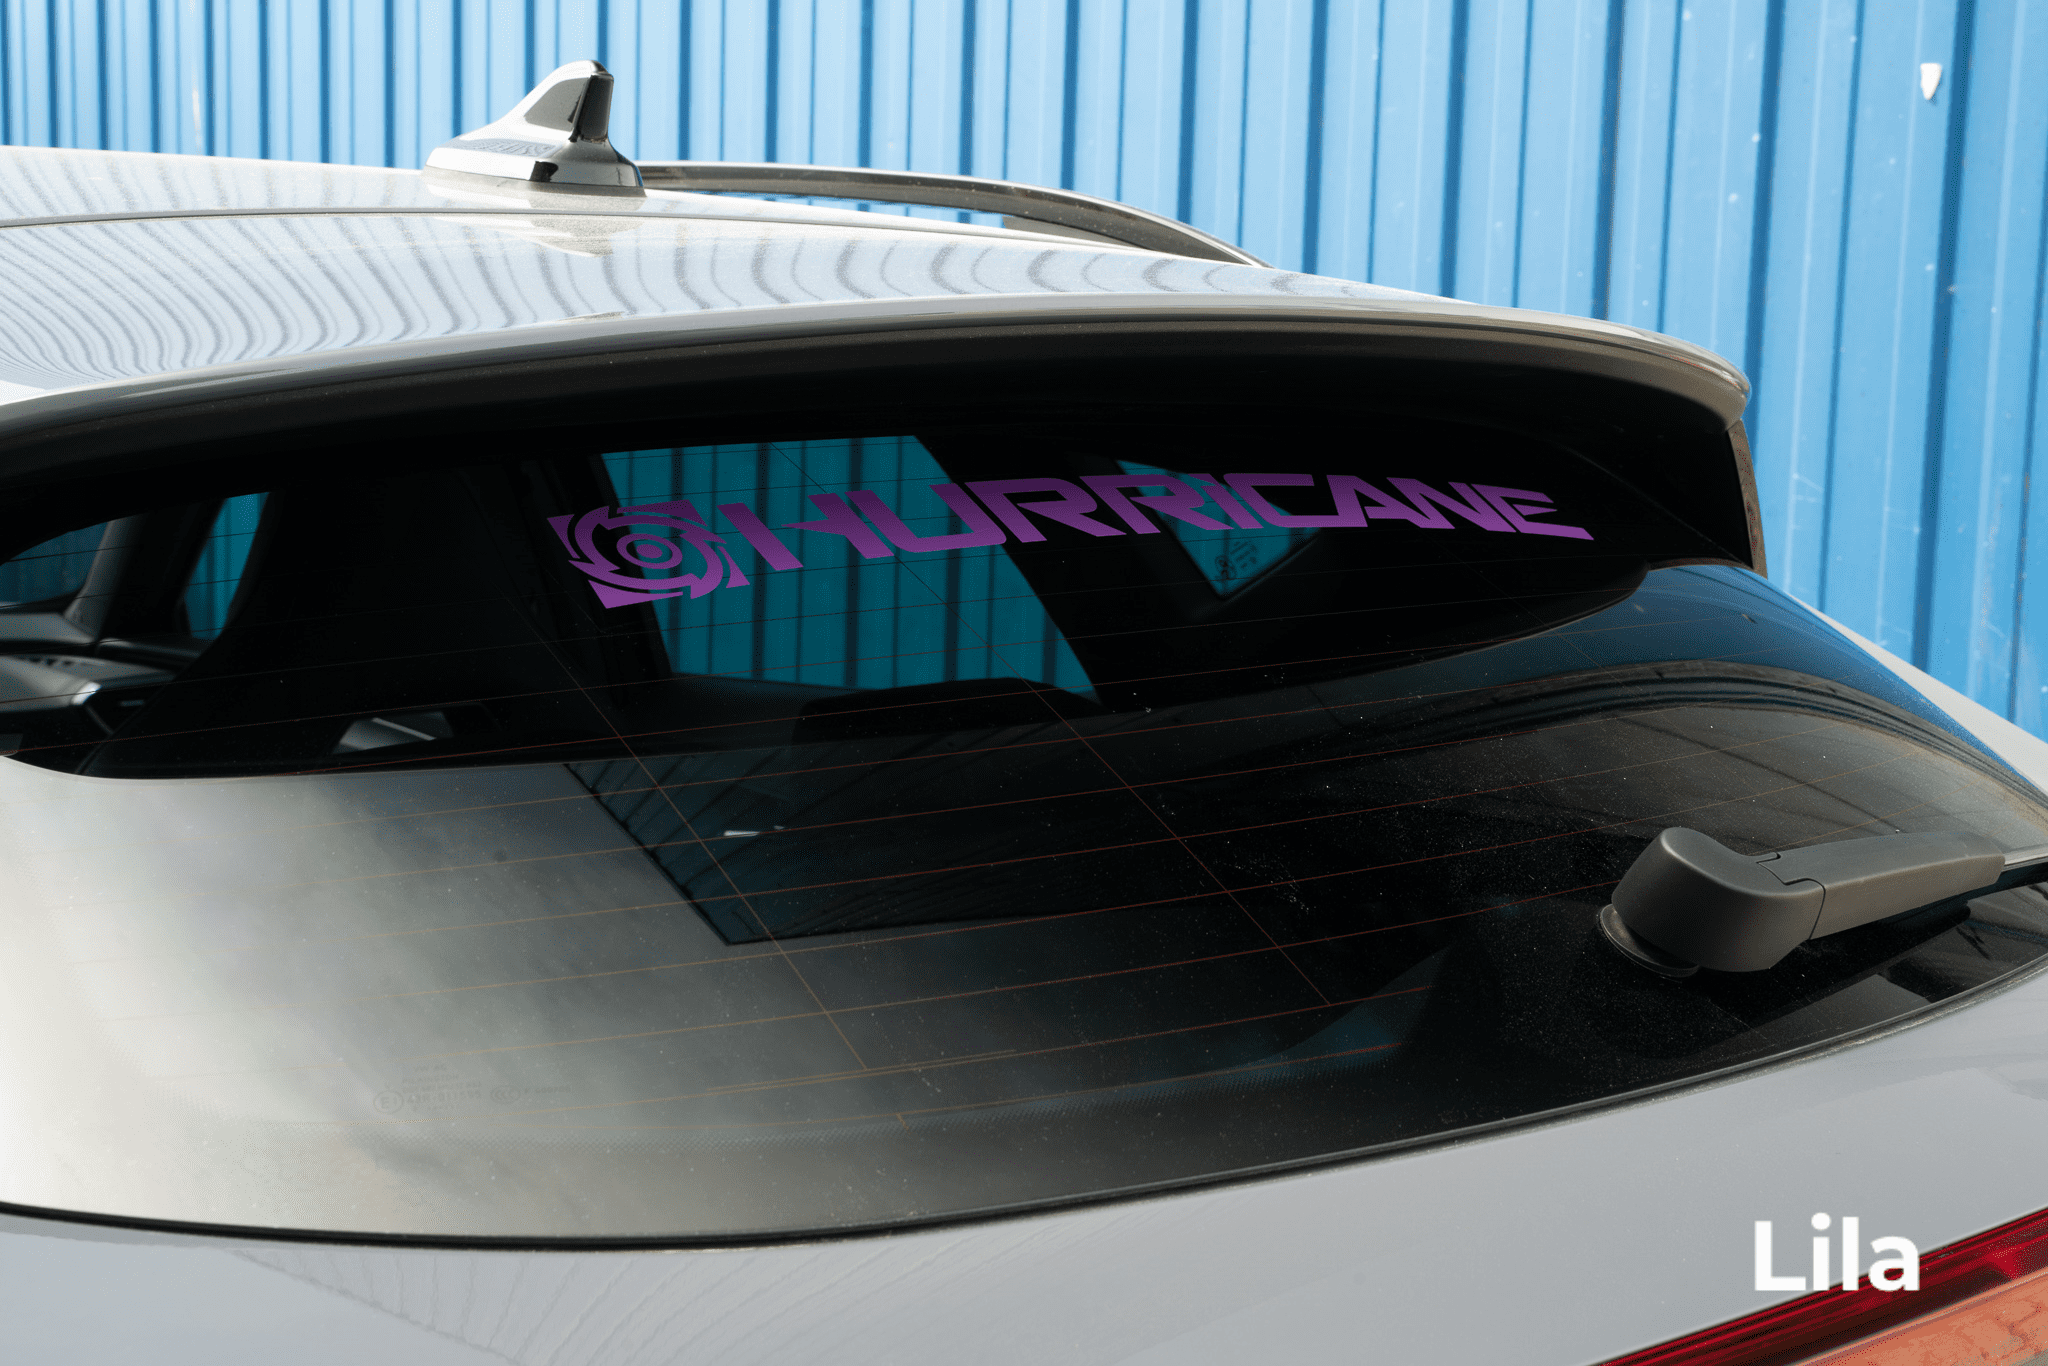 Hurricane Autoaufkleber für Karosserien und Scheiben